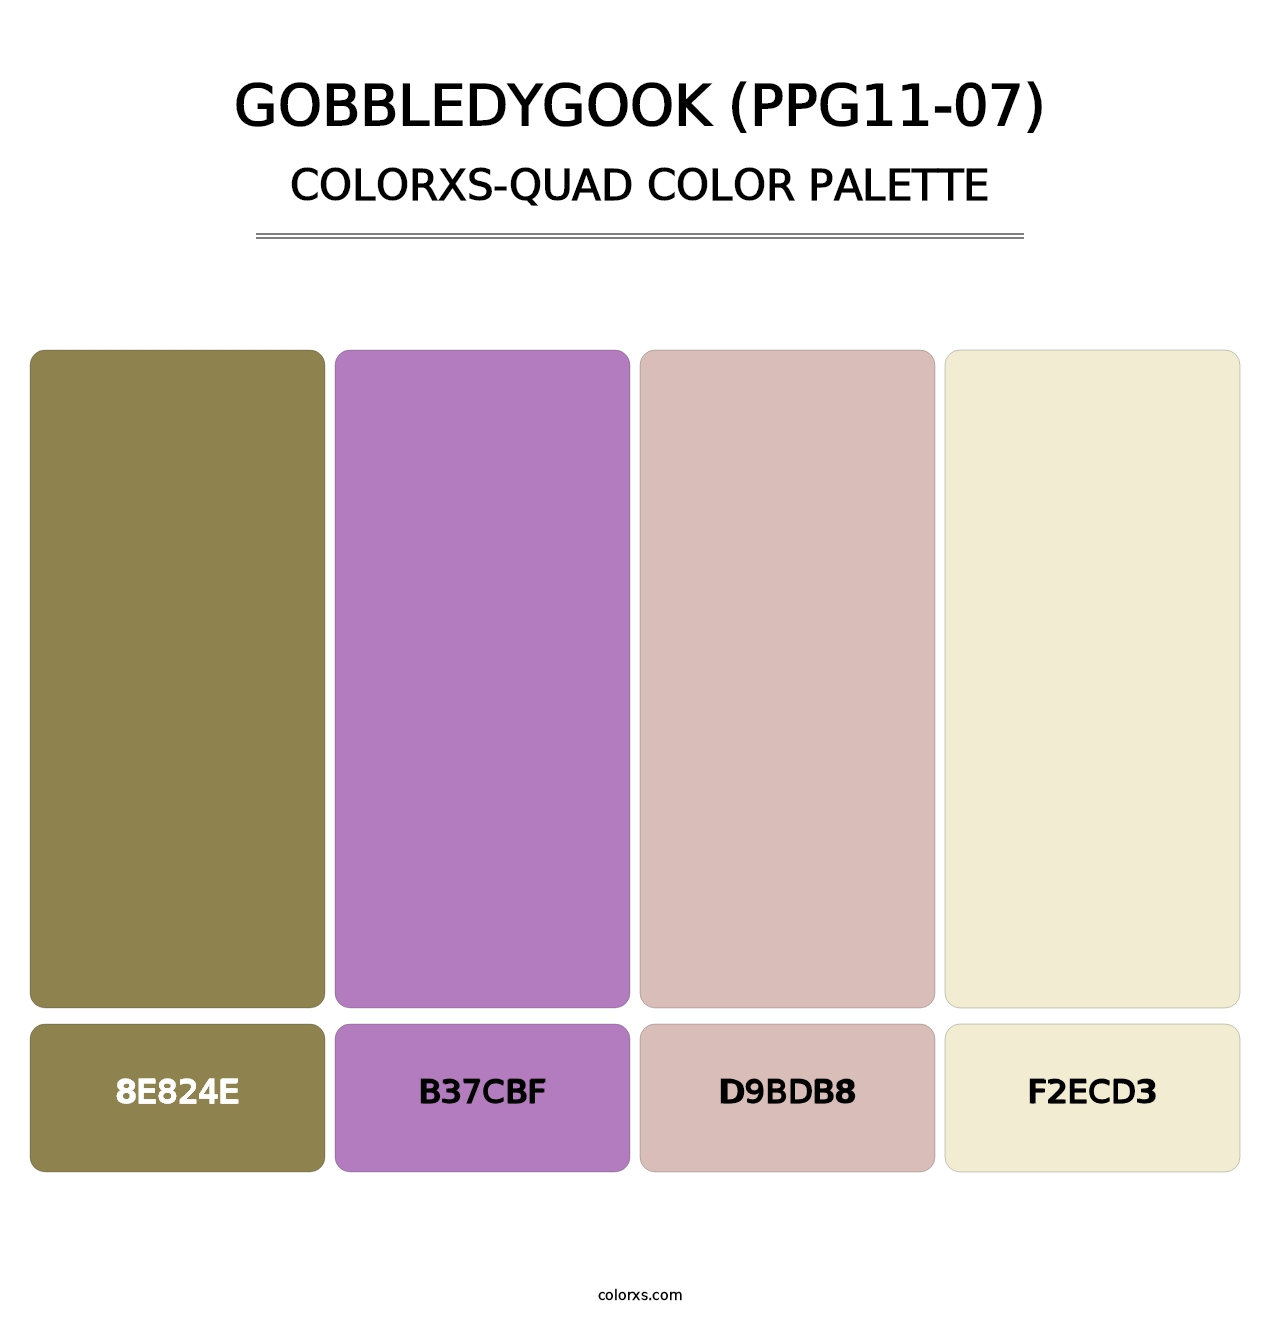 Gobbledygook (PPG11-07) - Colorxs Quad Palette